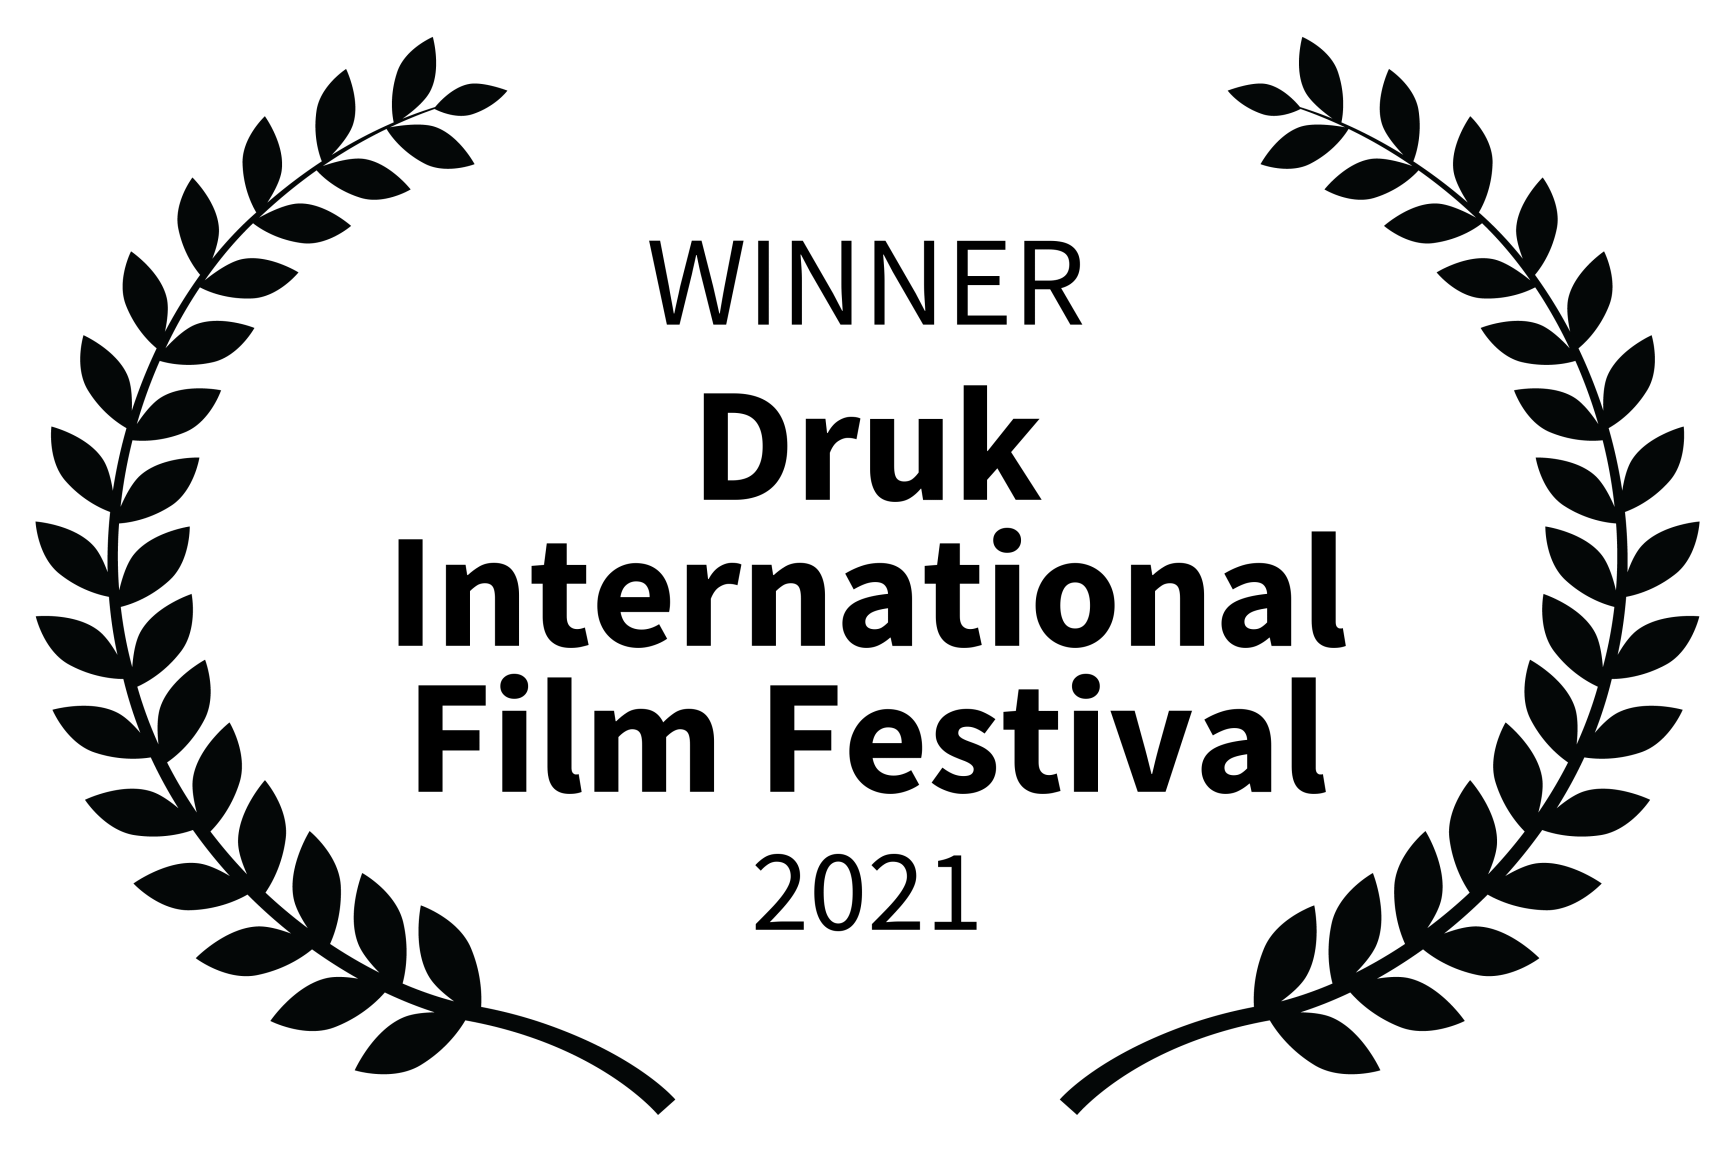 WINNER Druk International Film Festival 2021